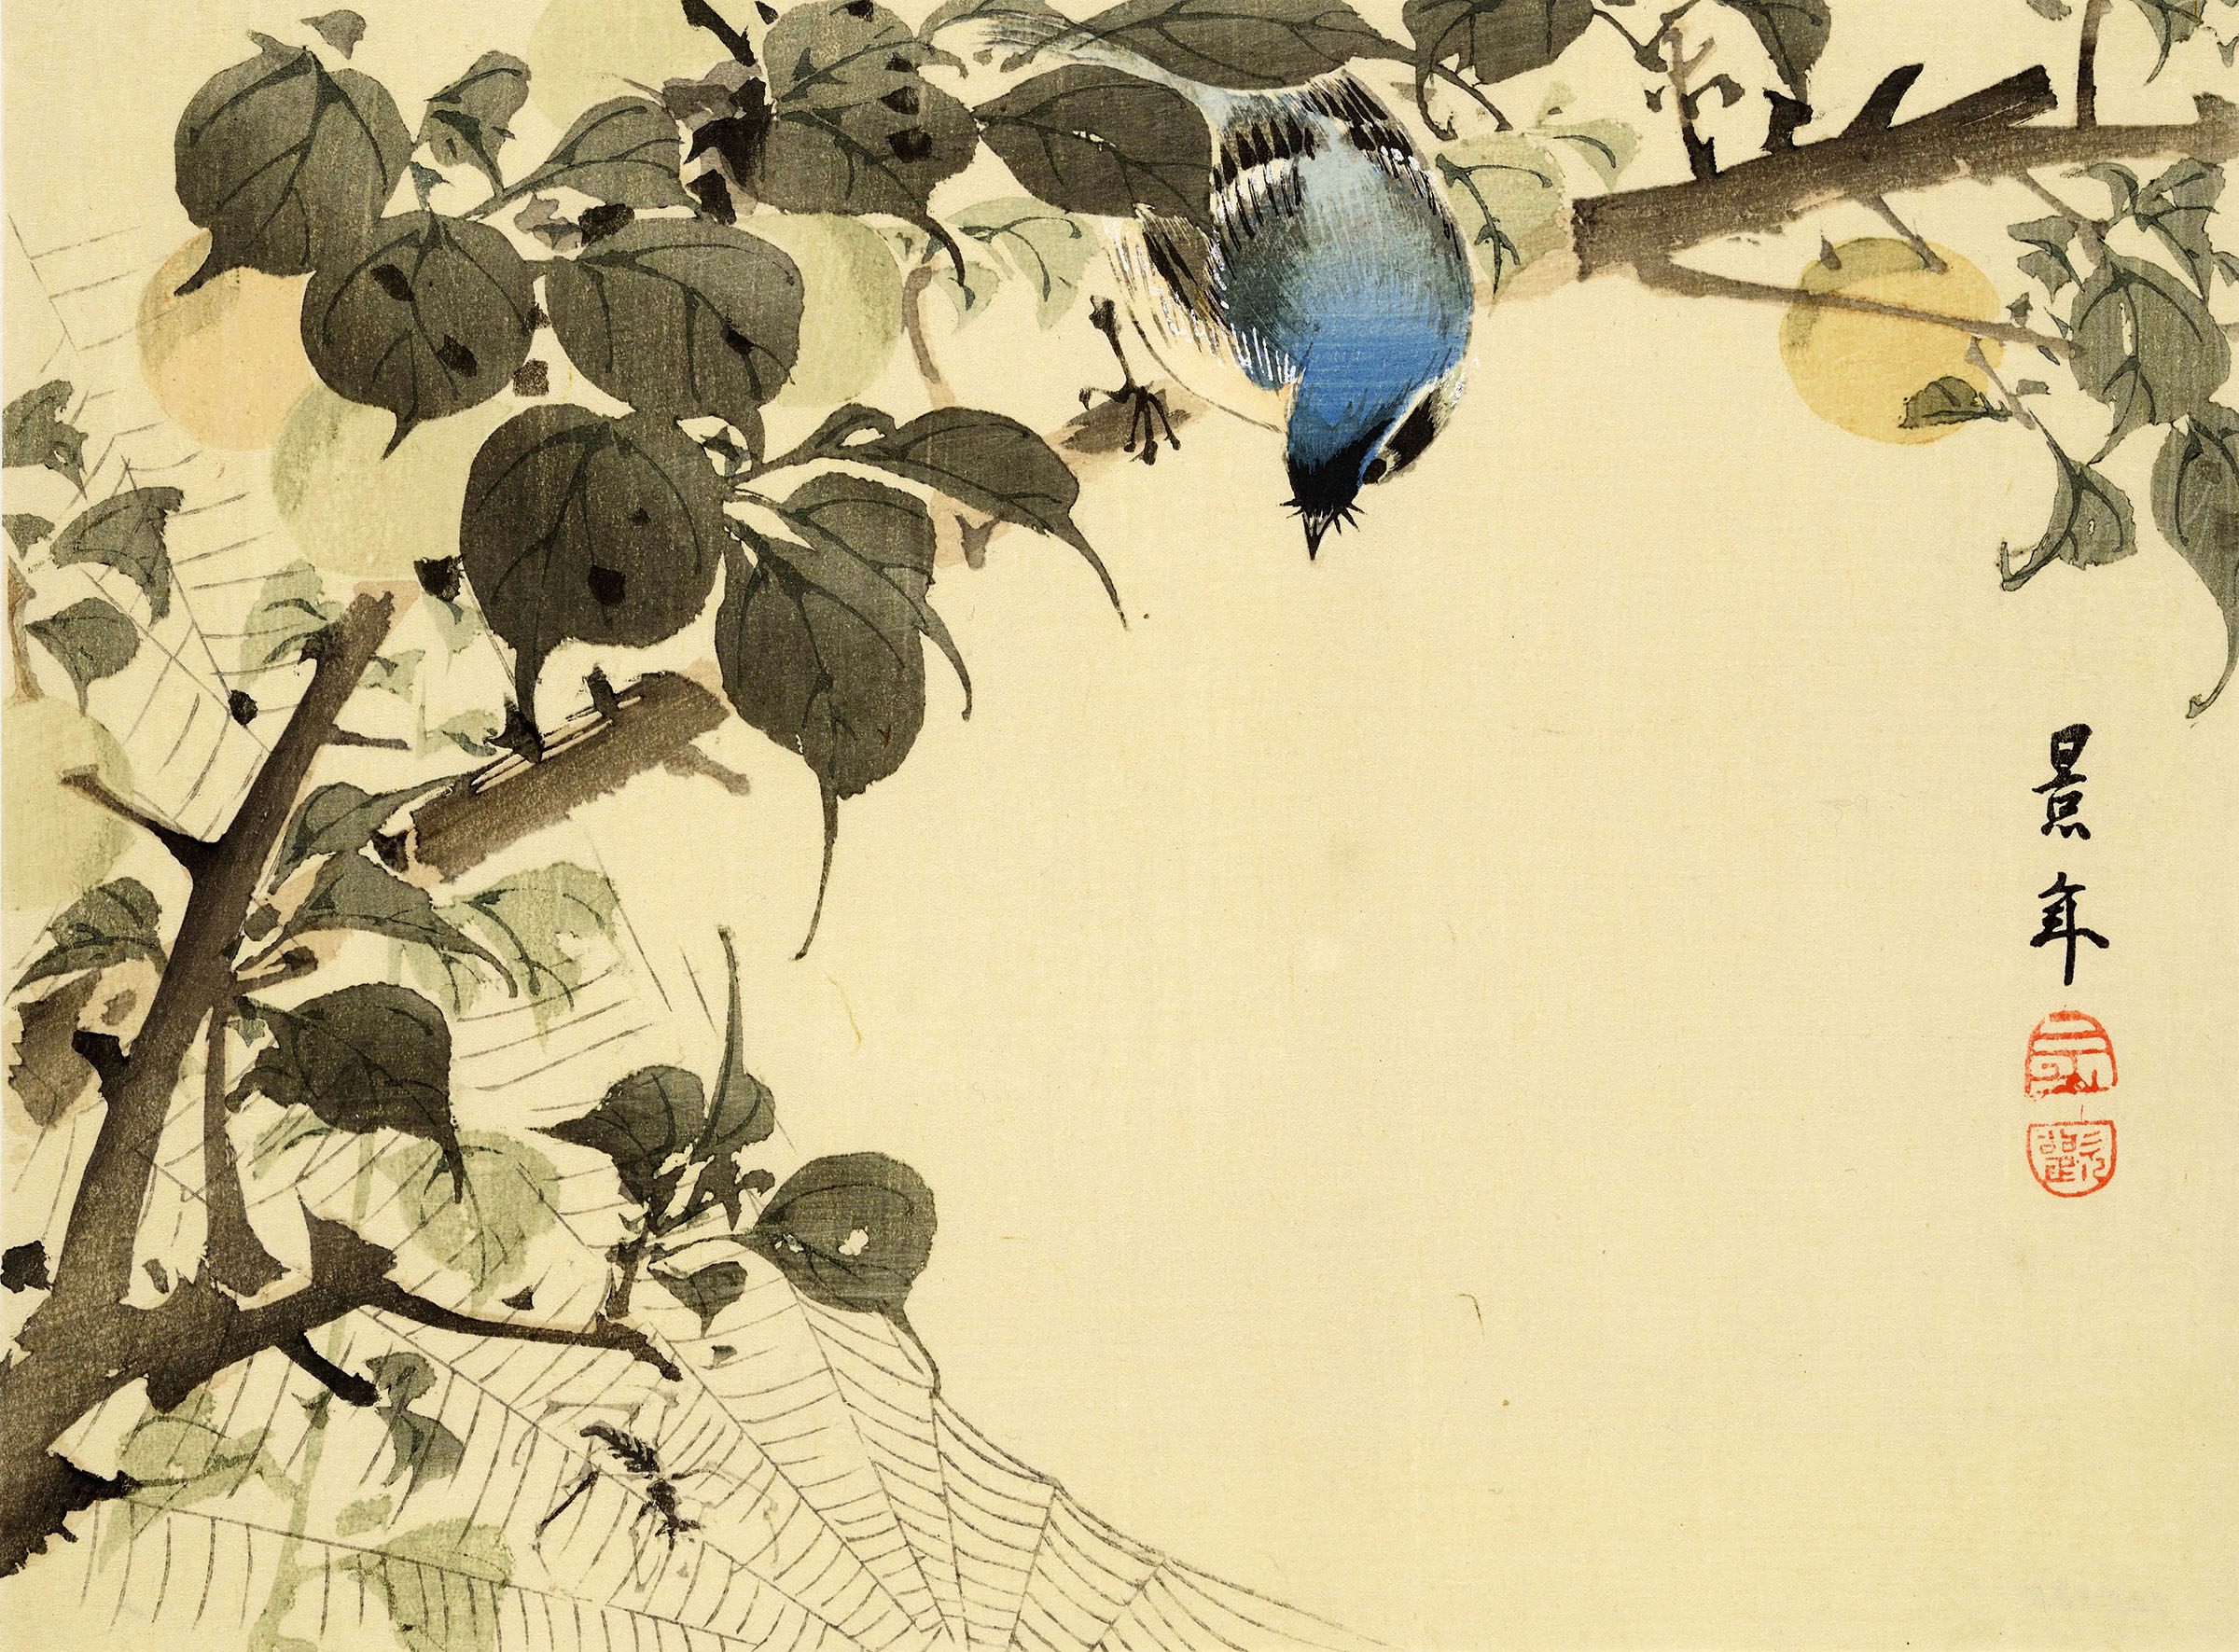 Utamaro, Hokusai e la Civiltà del Piacere. A Torino una colossale mostra ripercorre i secoli d’oro dell’arte giapponese